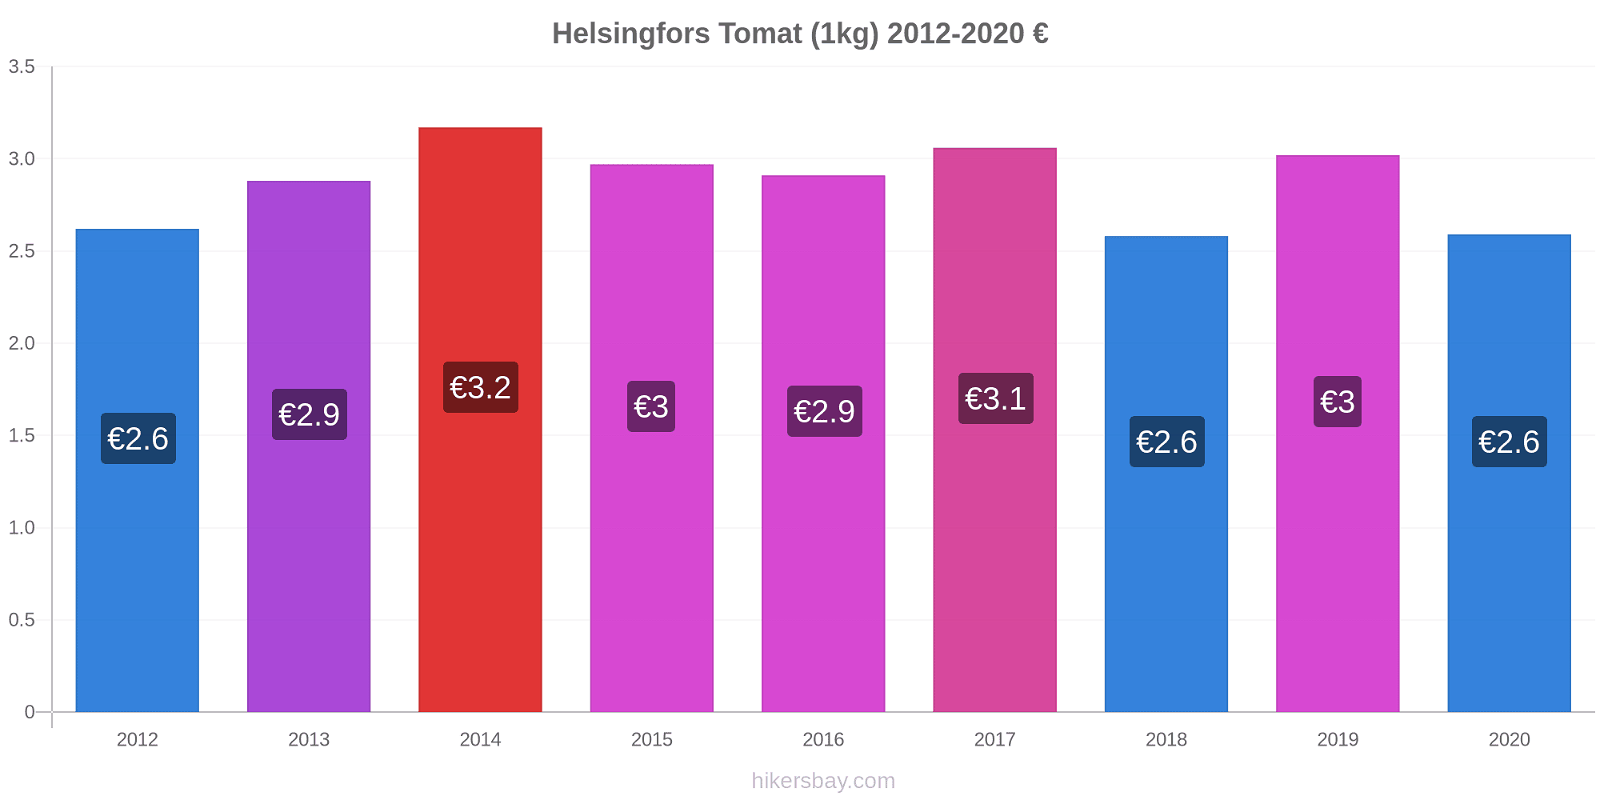 Helsingfors prisendringer Tomat (1kg) hikersbay.com